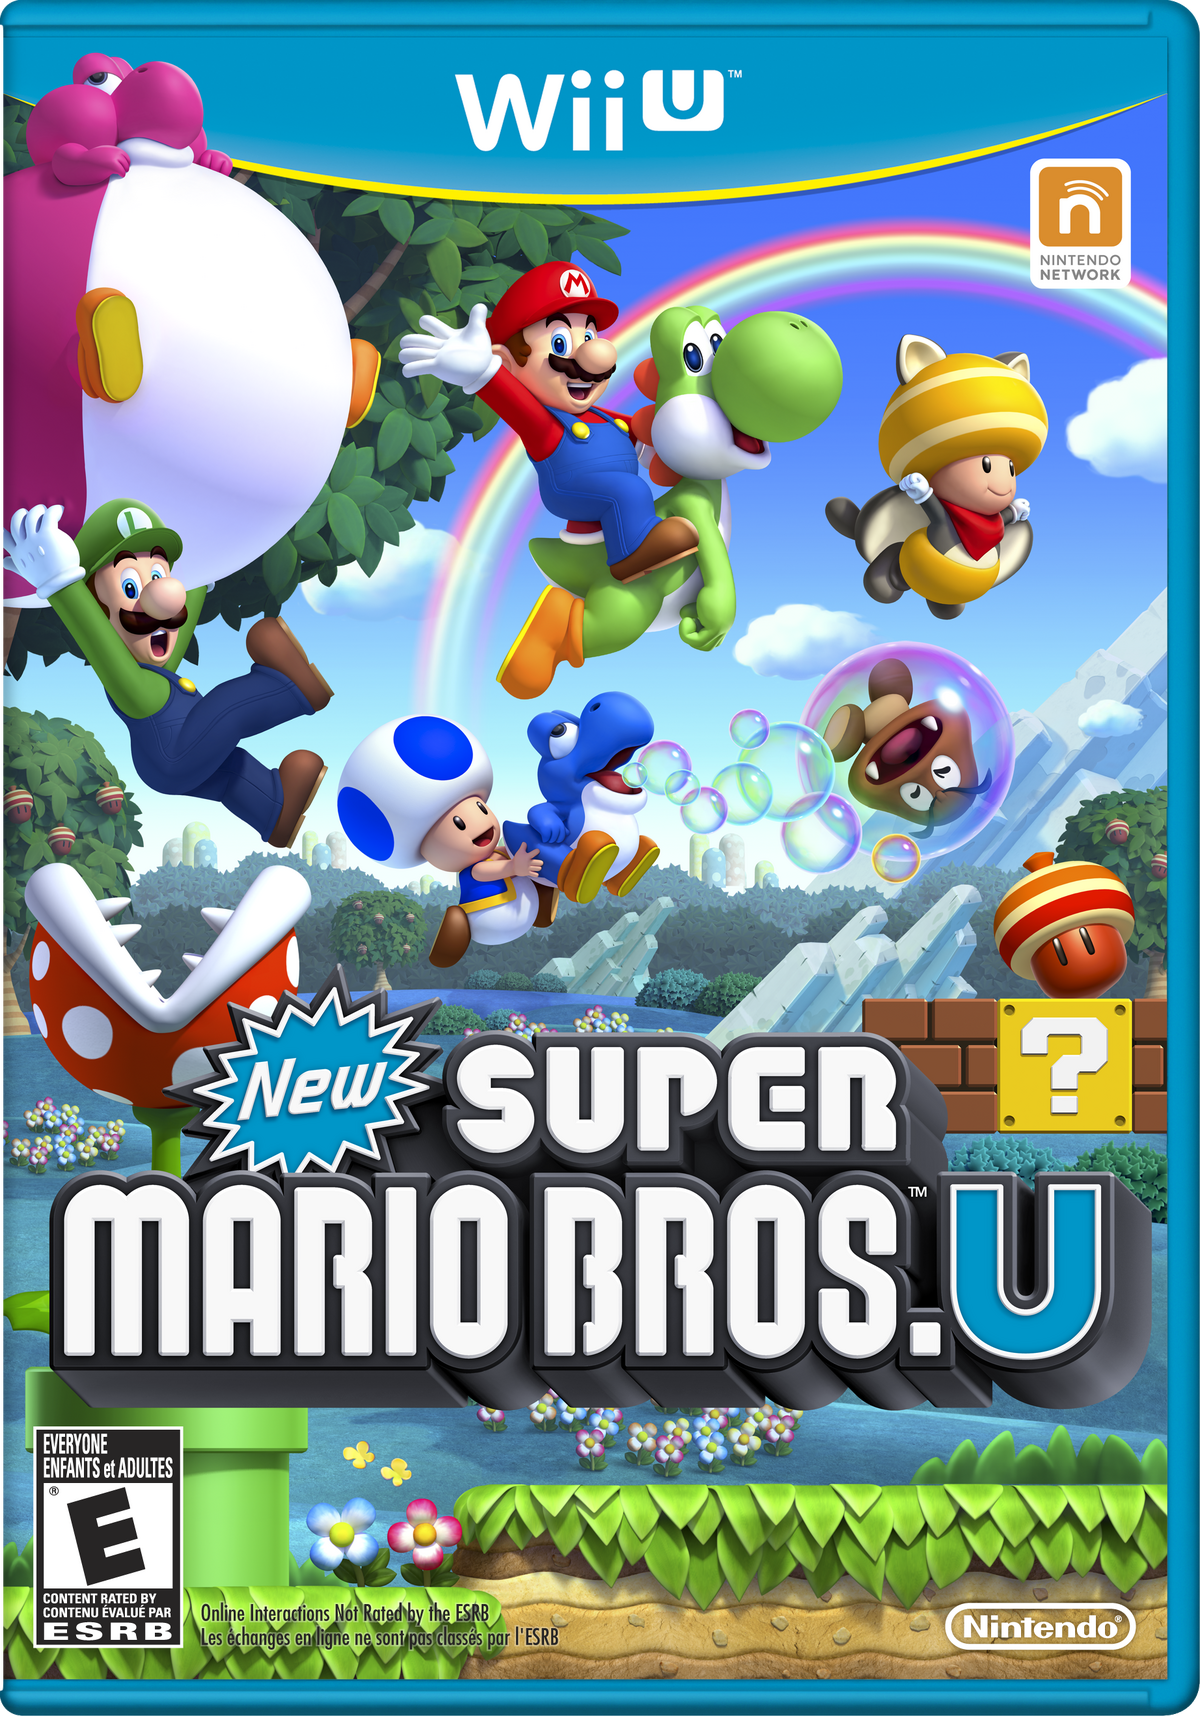 New Super Mario Bros. Wii: un homenaje a la saga Mario - Libertad